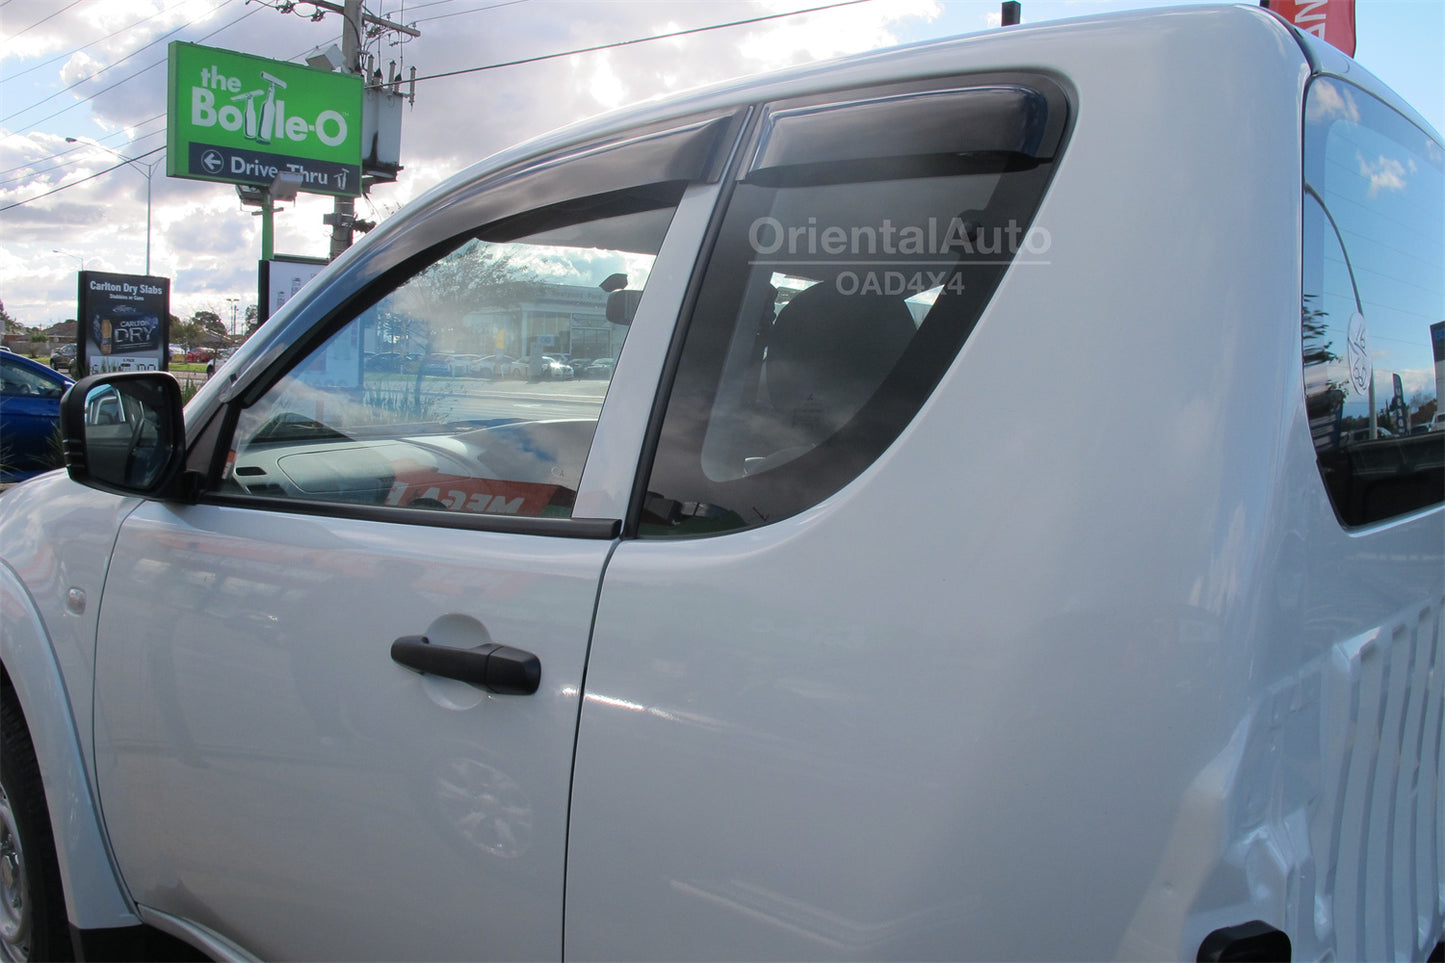 Premium Weathershields Weather Shields Window Visor For Mitsubishi Triton Extra Cab 2006-2015 4pcs